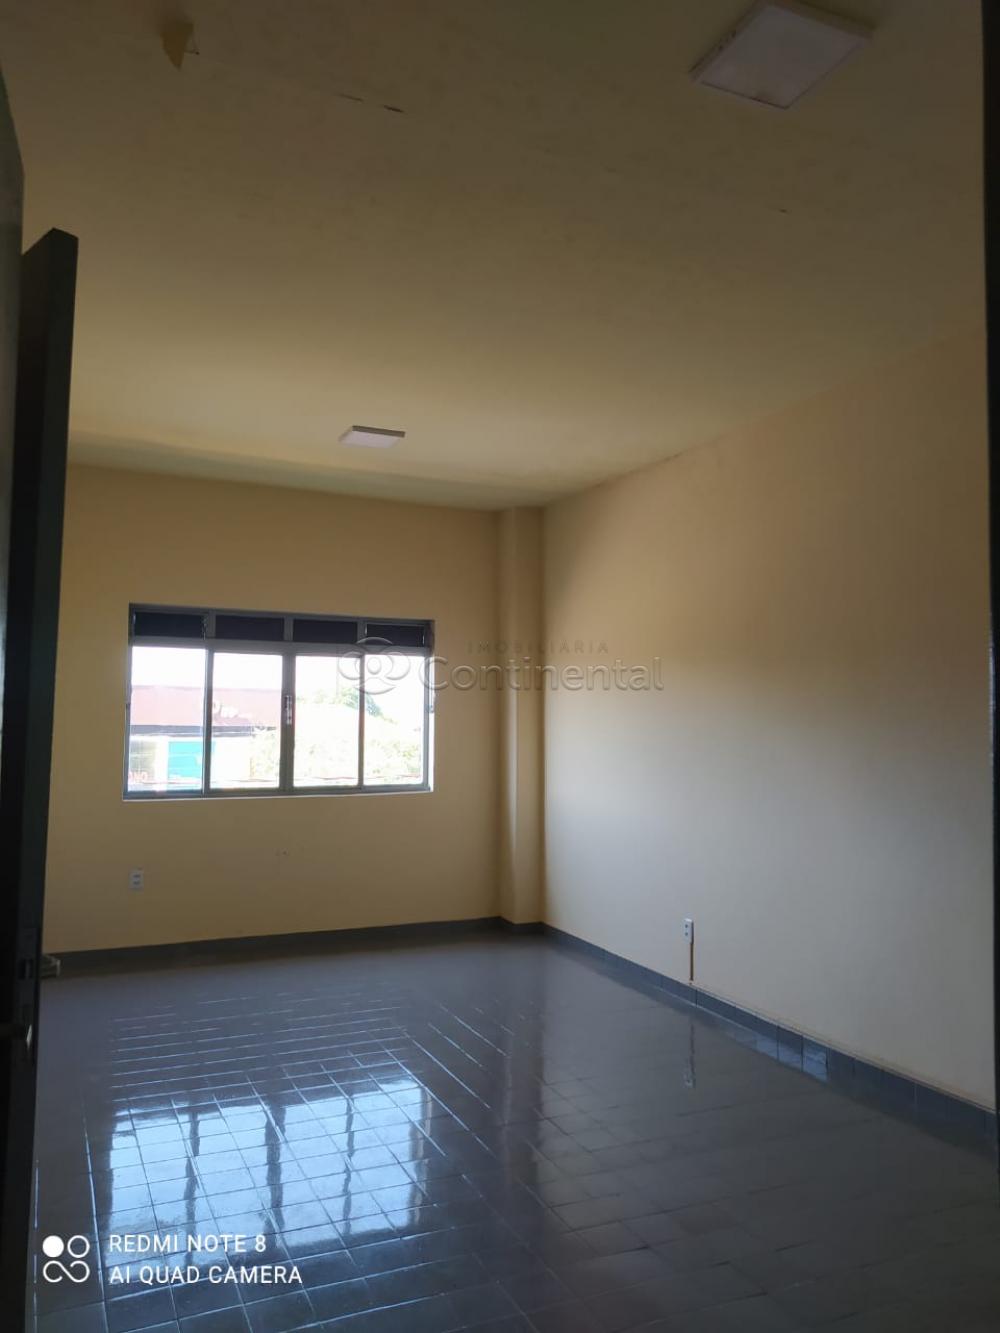 Alugar Apartamento / Kitinete em Dourados R$ 1.000,00 - Foto 6